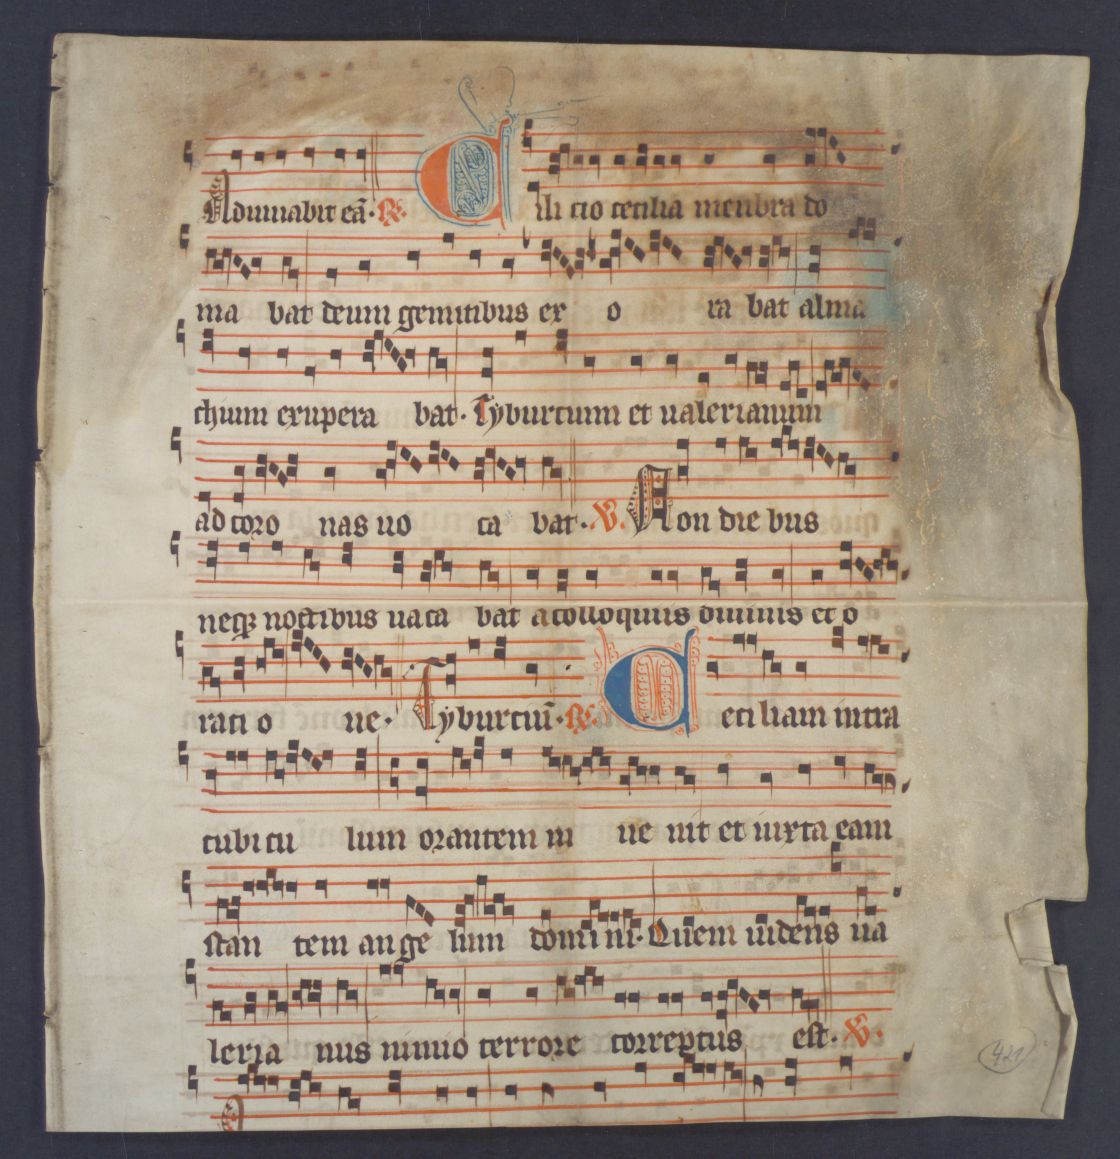 Antiphonale (säkular) (Fragment), Stuttgart, Hauptstaatsarchiv Stuttgart, J 522 E III 421